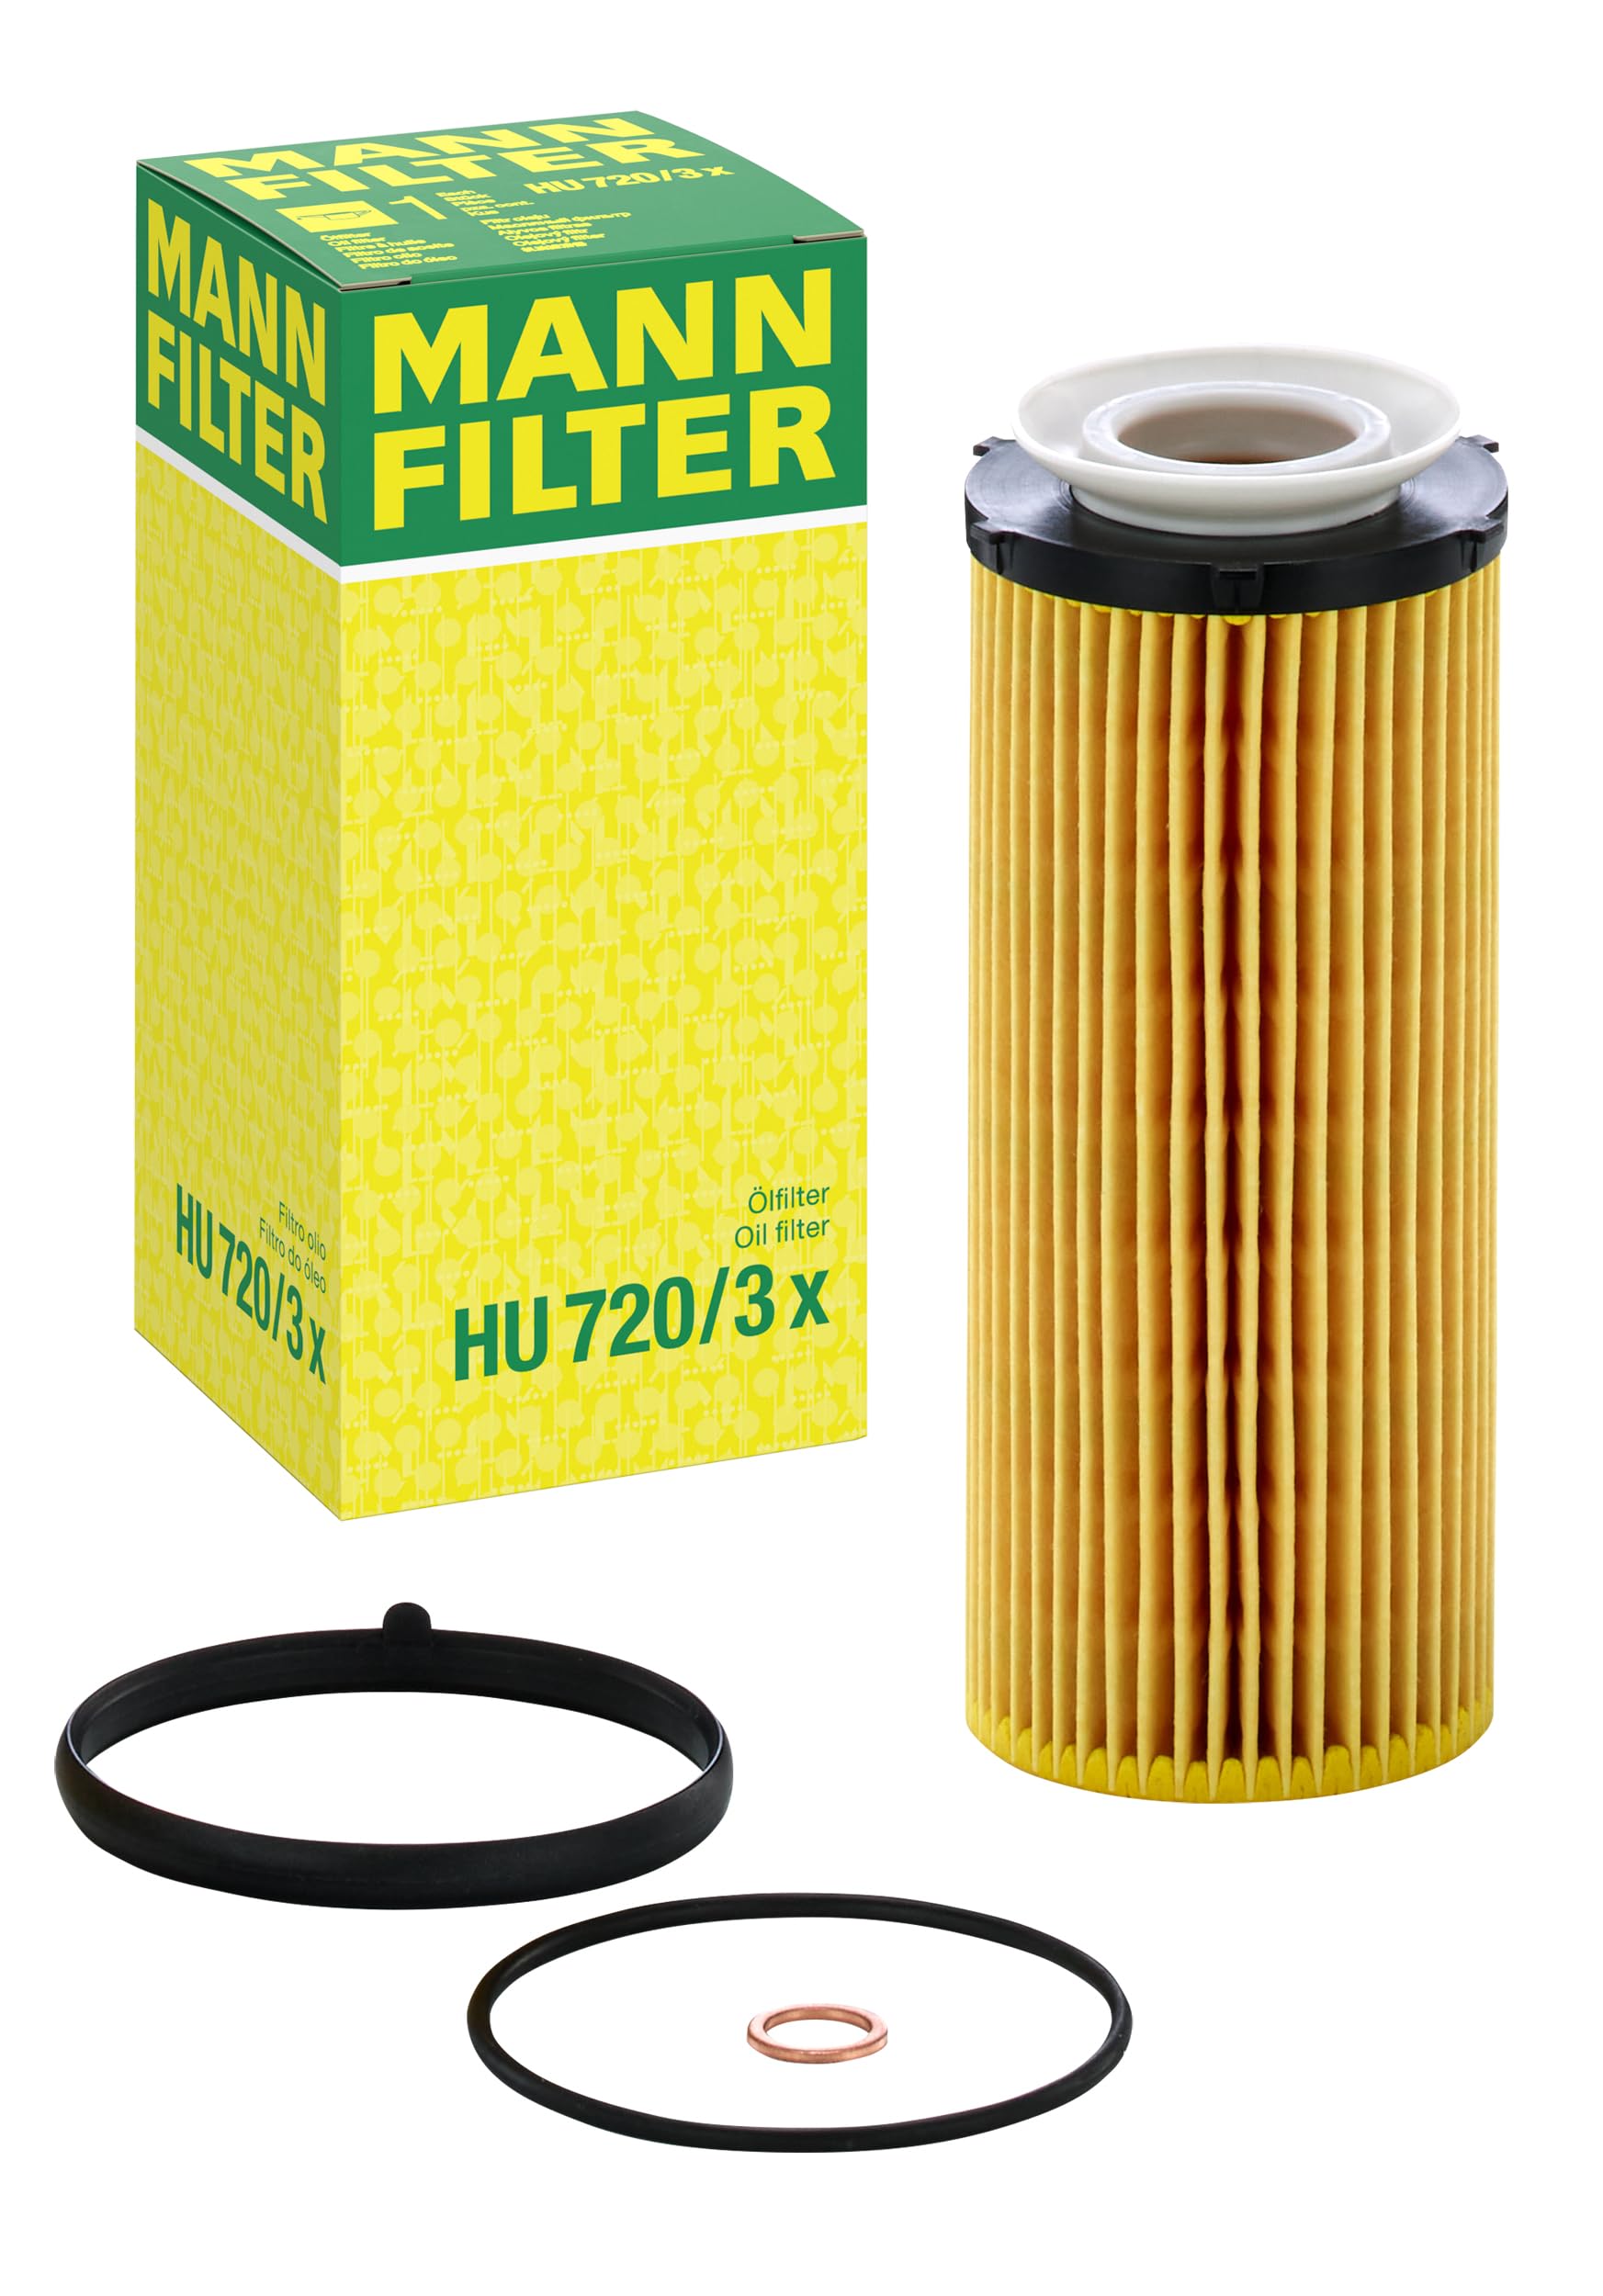 MANN-FILTER HU 720/3 X Ölfilter – Ölfilter Satz mit Dichtung / Dichtungssatz – Für PKW von MANN-FILTER